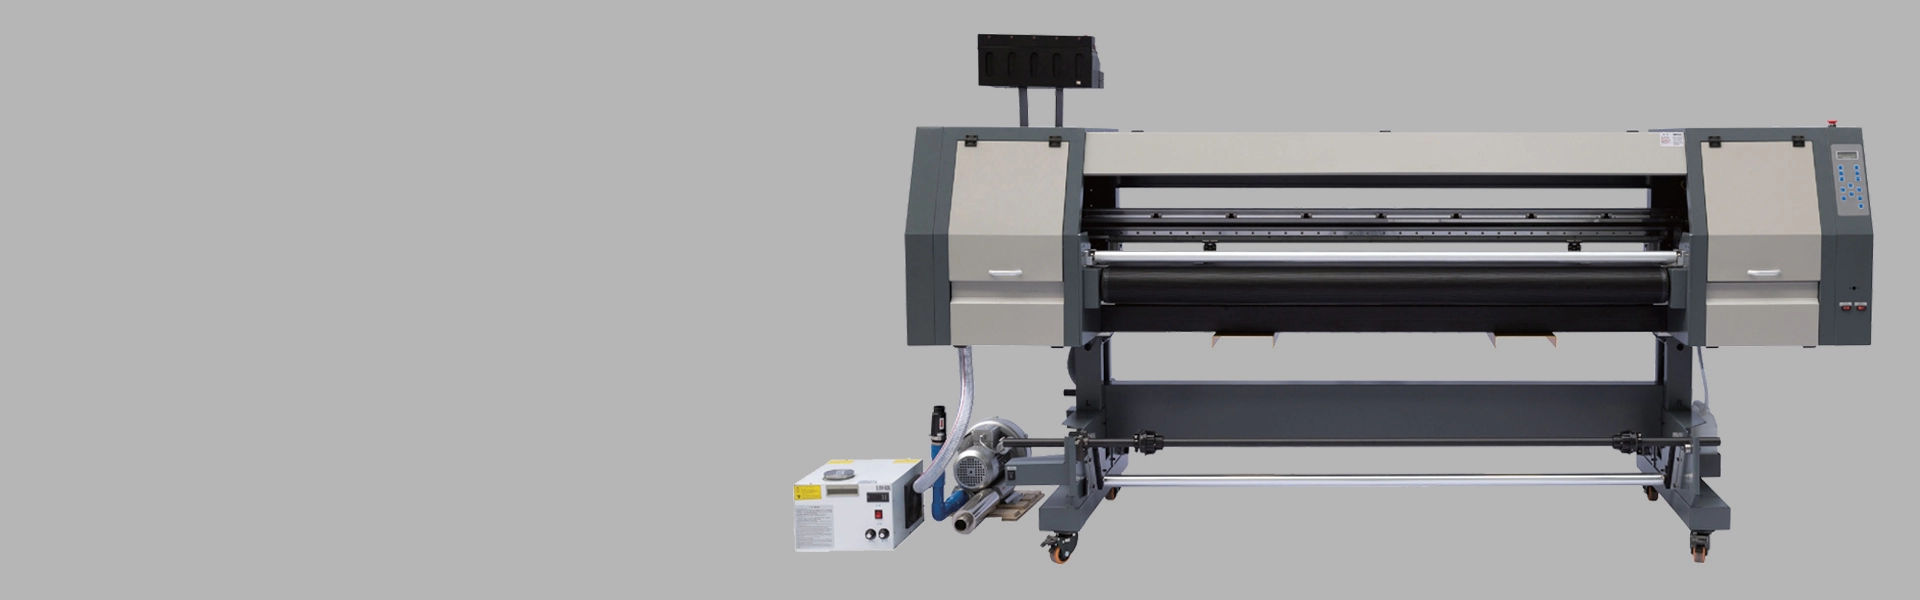 Impressora híbrida UV de 1,8 m